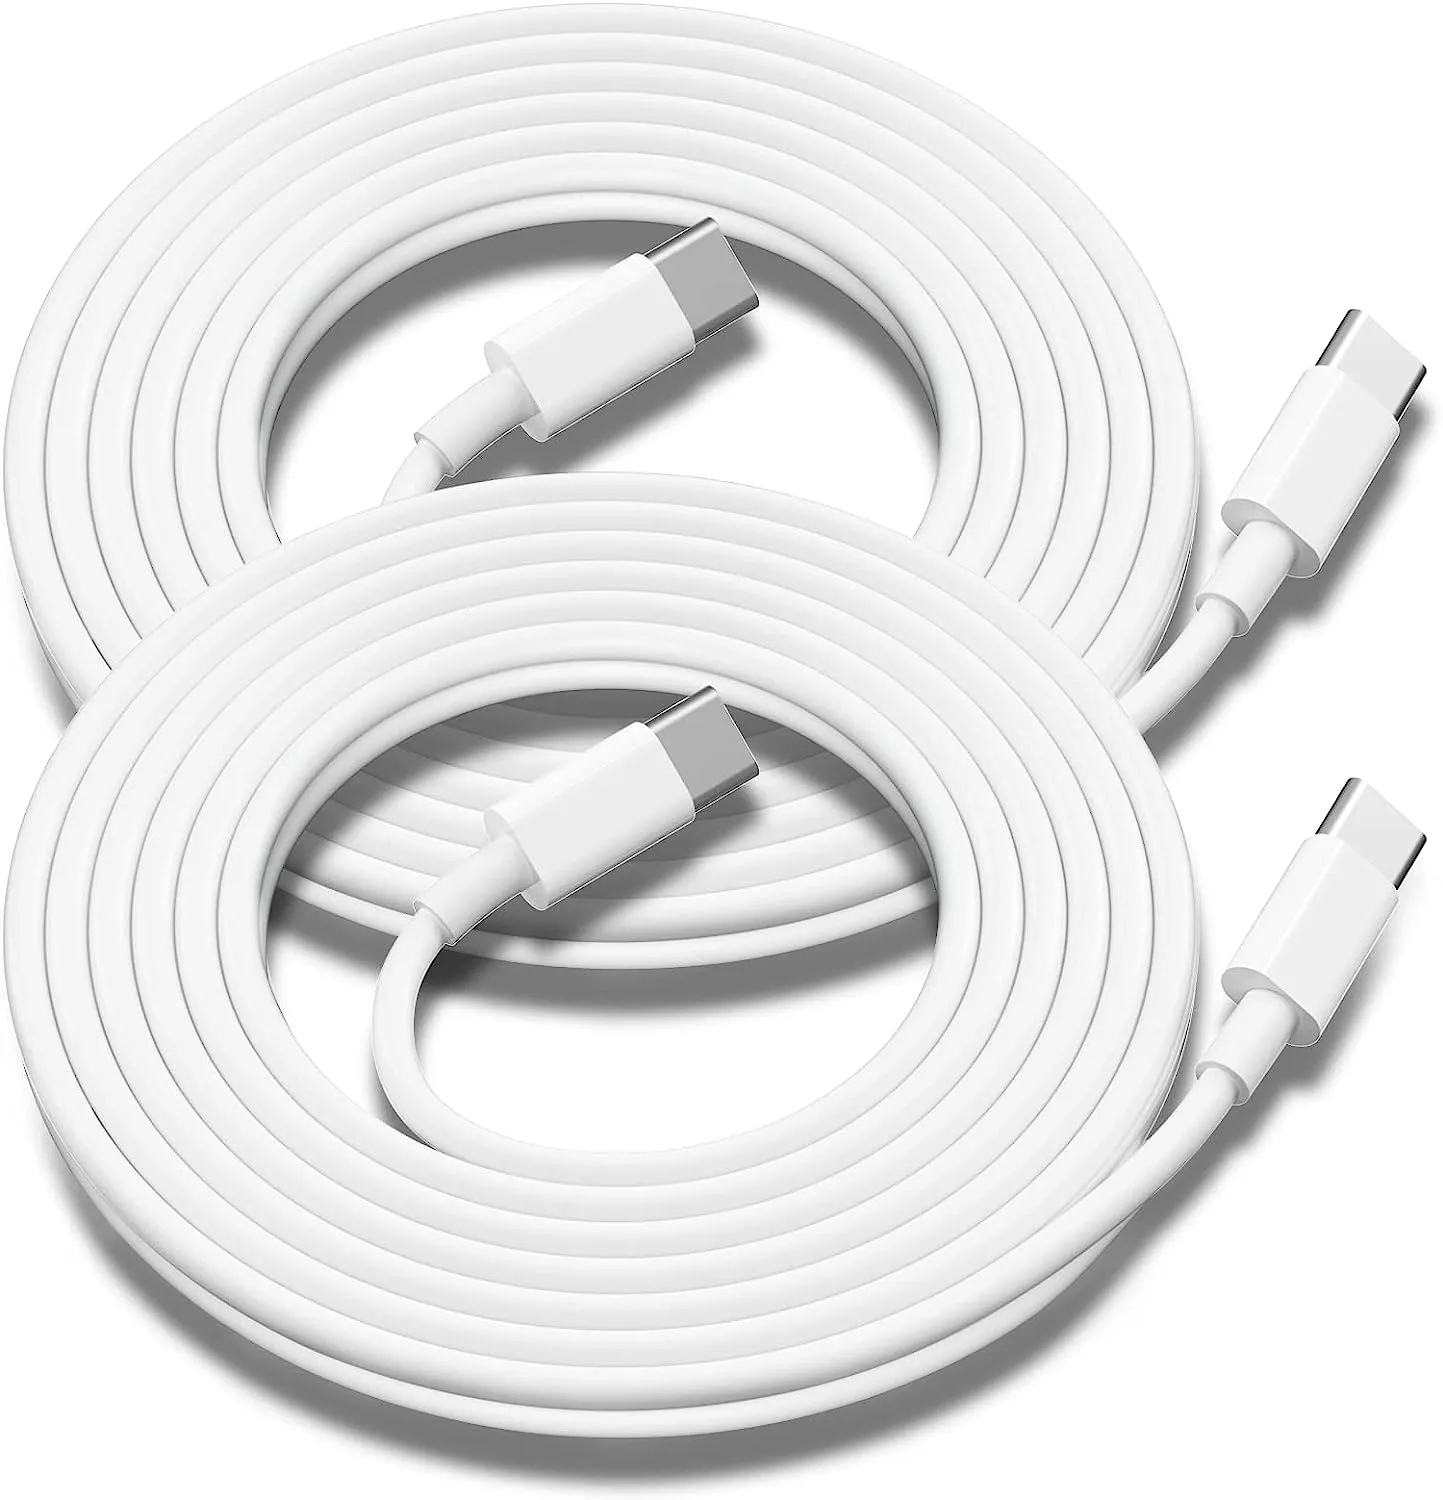 Câble Compatible pour iPhone Type-C